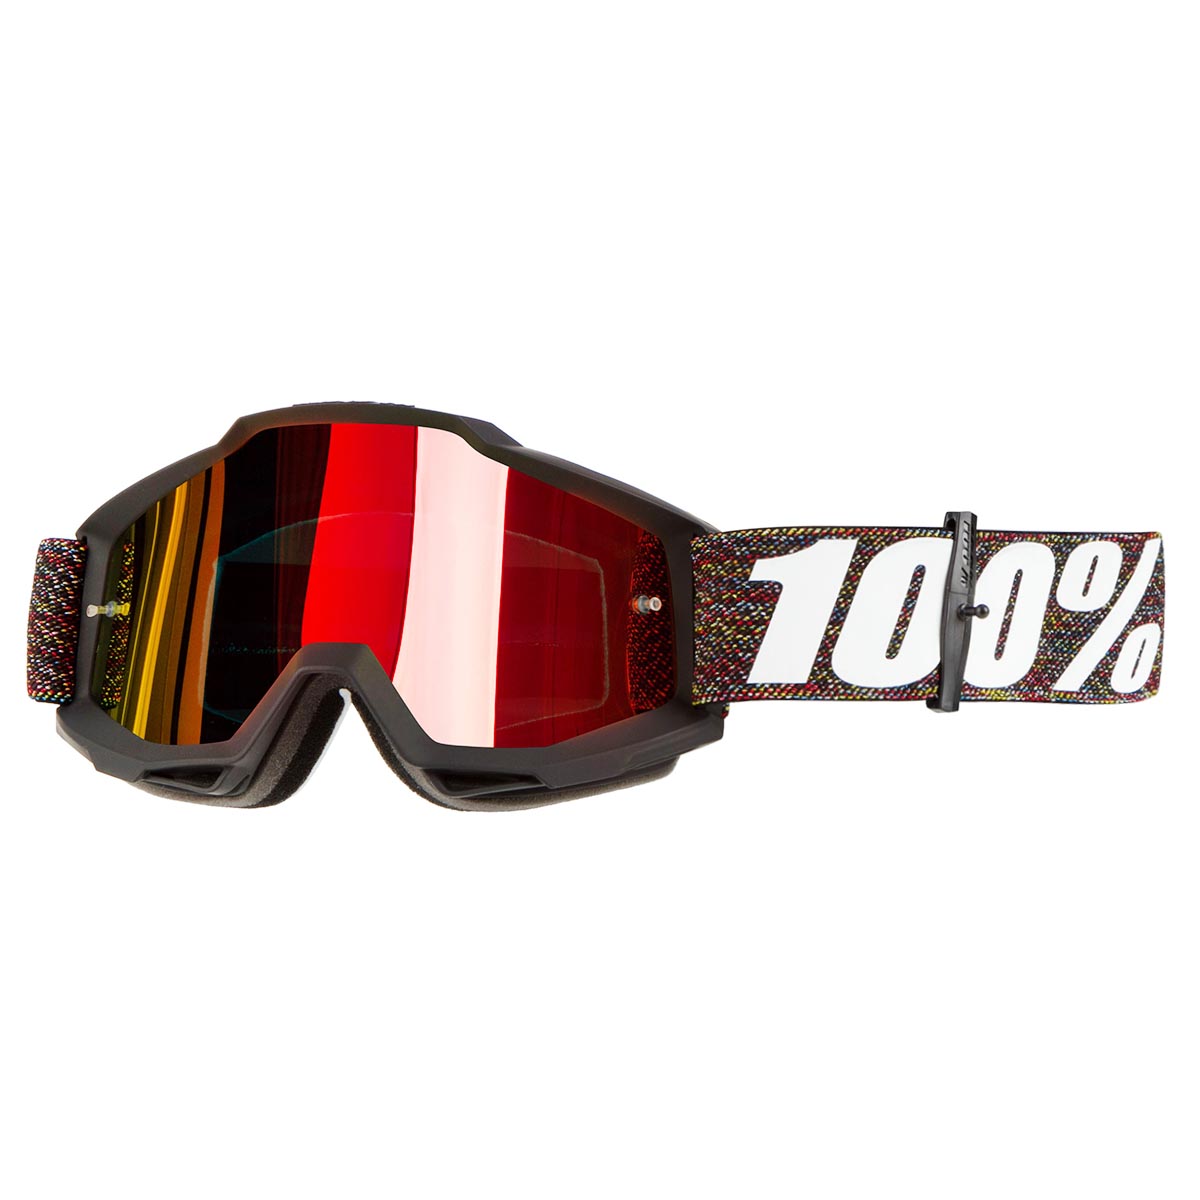 100% Goggle Accuri Kricki - Mirror Red Anti-Fog